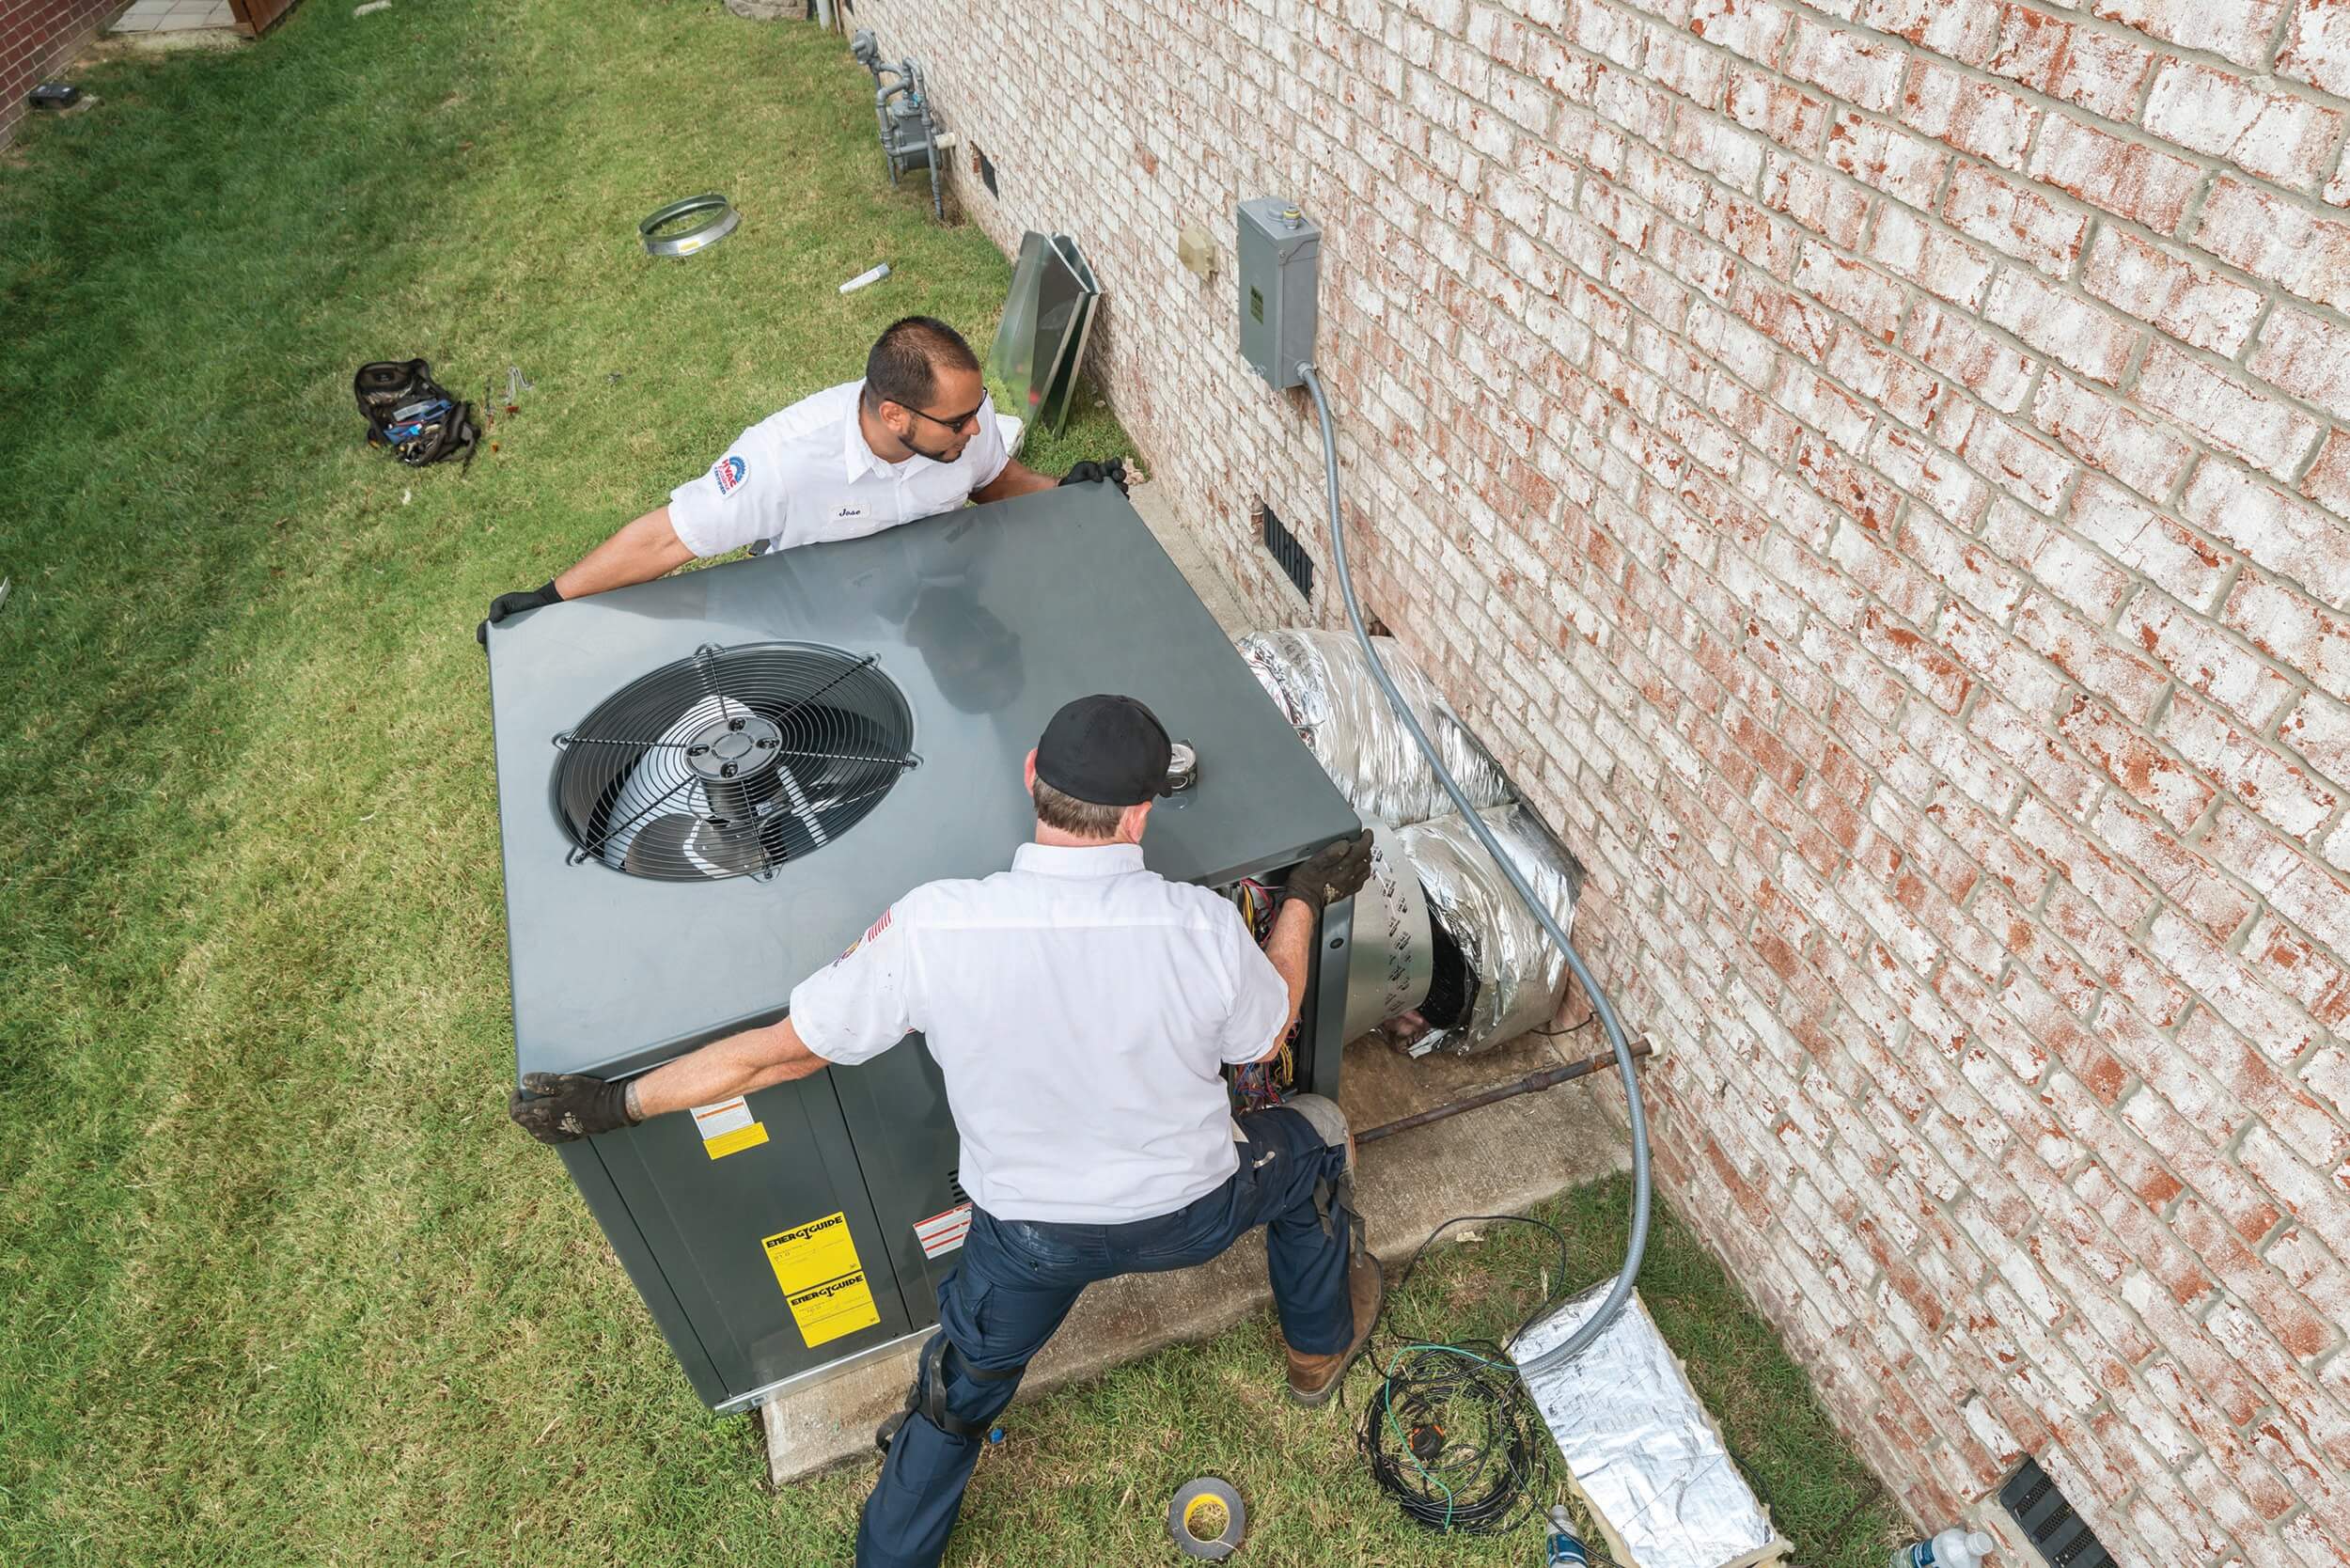 Two HVAC technicians installing HVAC unit.